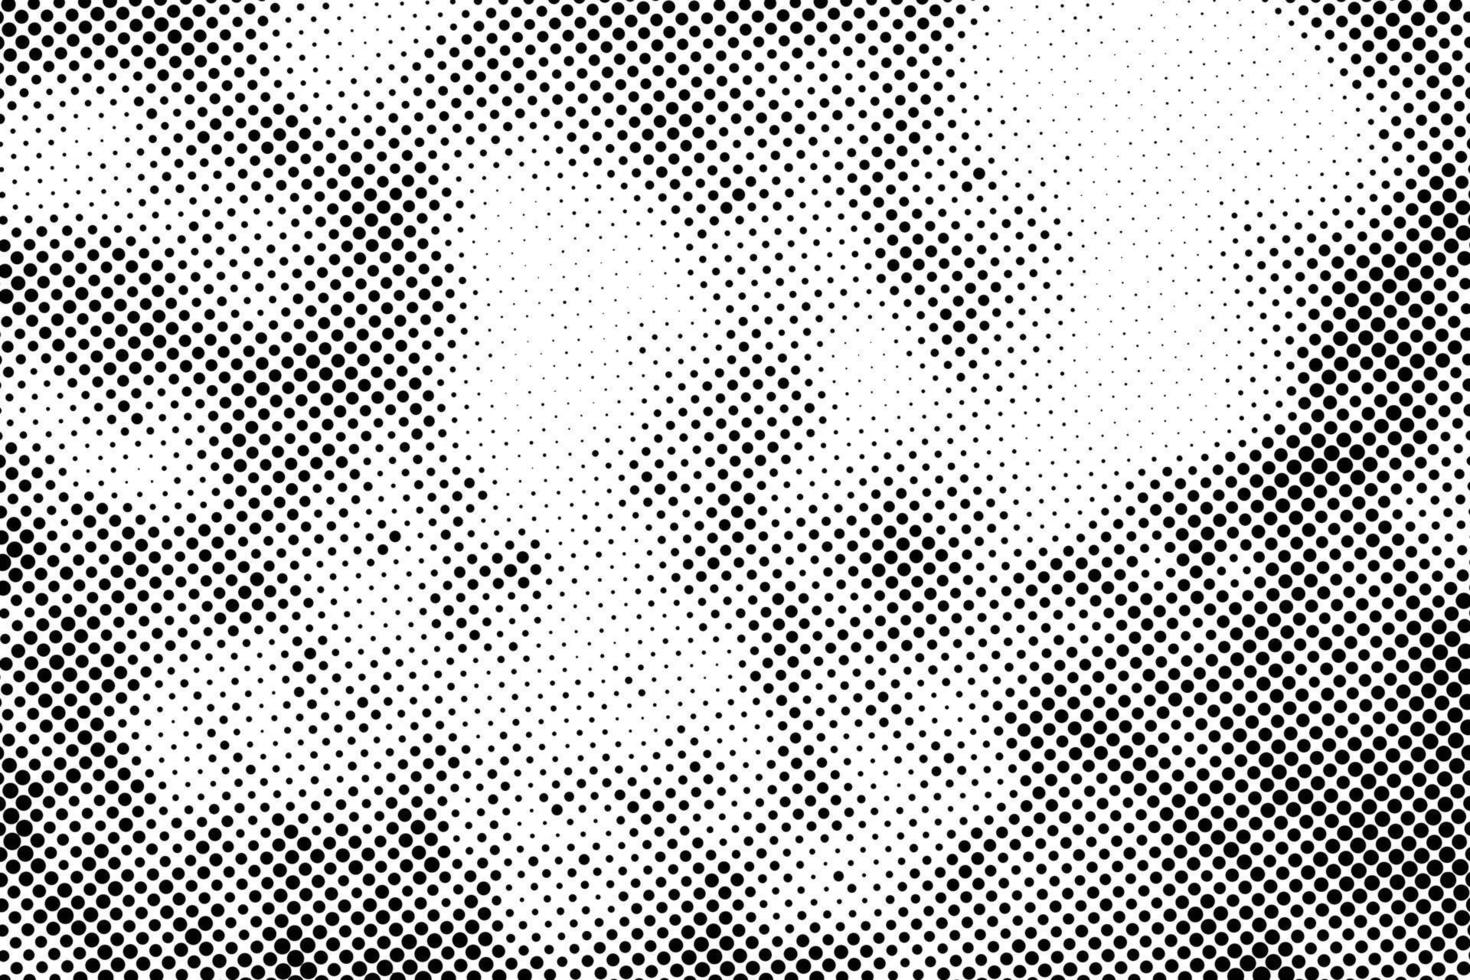 Vektormuster mit schwarzen Punkten. halbtonbeschaffenheit pixelat auf weißem hintergrund. vektor